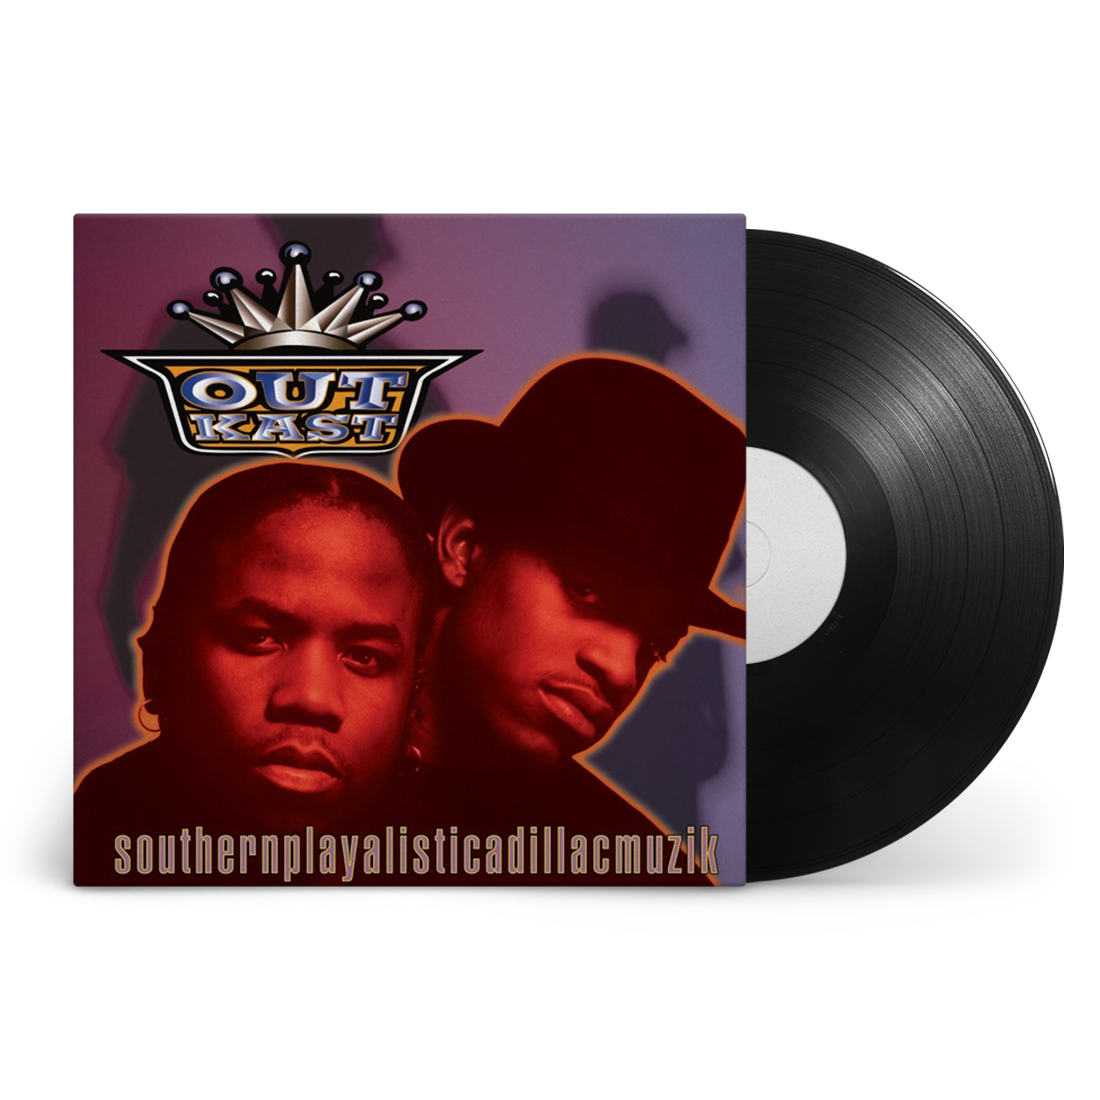 Southernplayalisticadillacmuzik: Vinyl LP